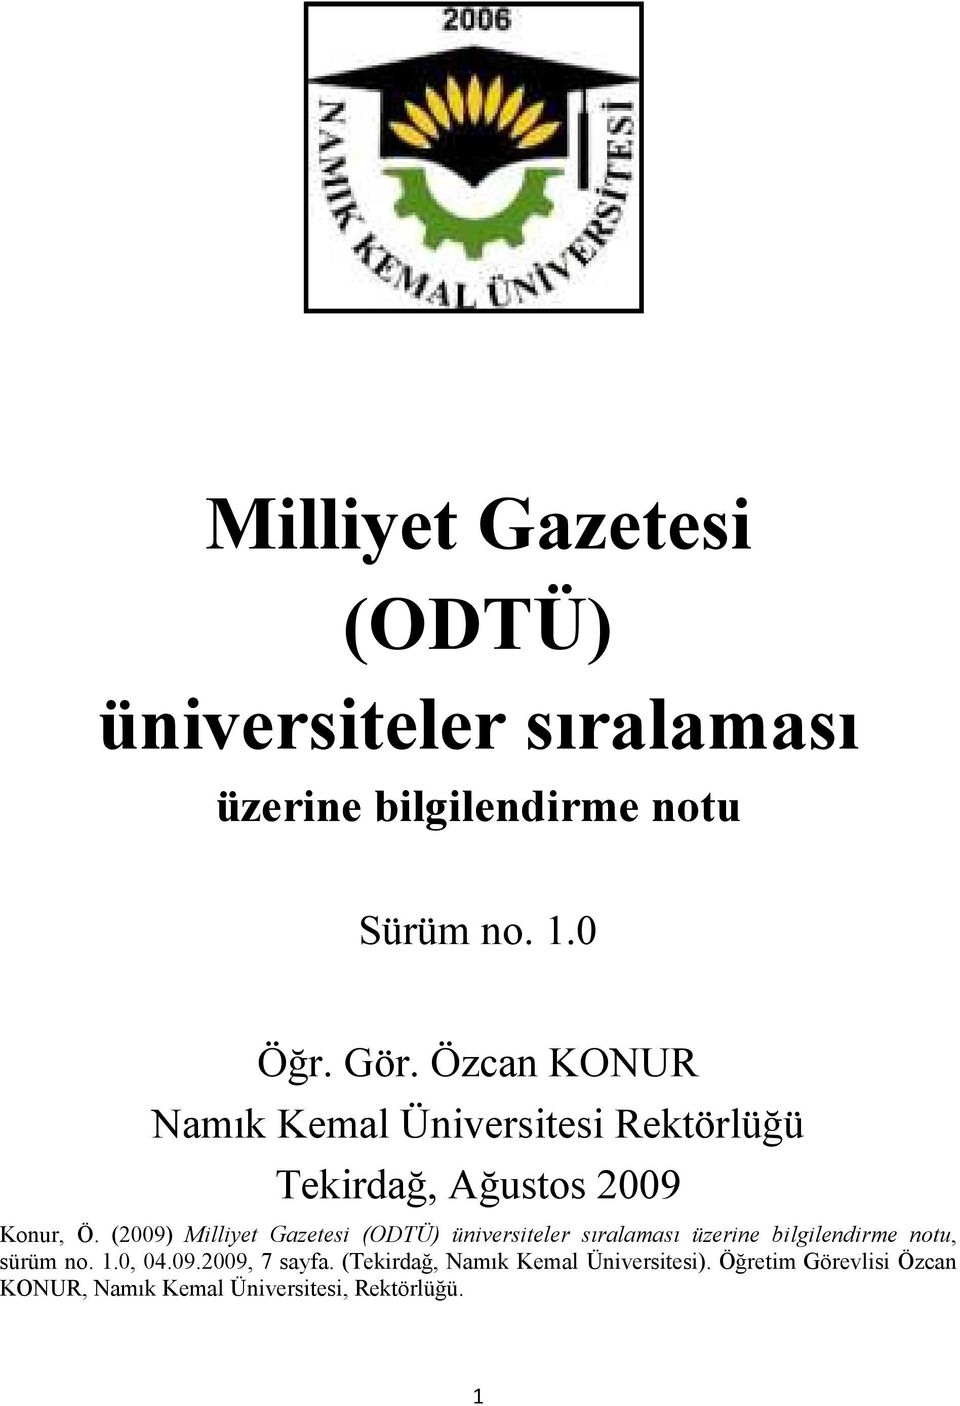 (2009) Milliyet Gazetesi (ODTÜ) üniversiteler sıralaması üzerine bilgilendirme notu, sürüm no. 1.0, 04.